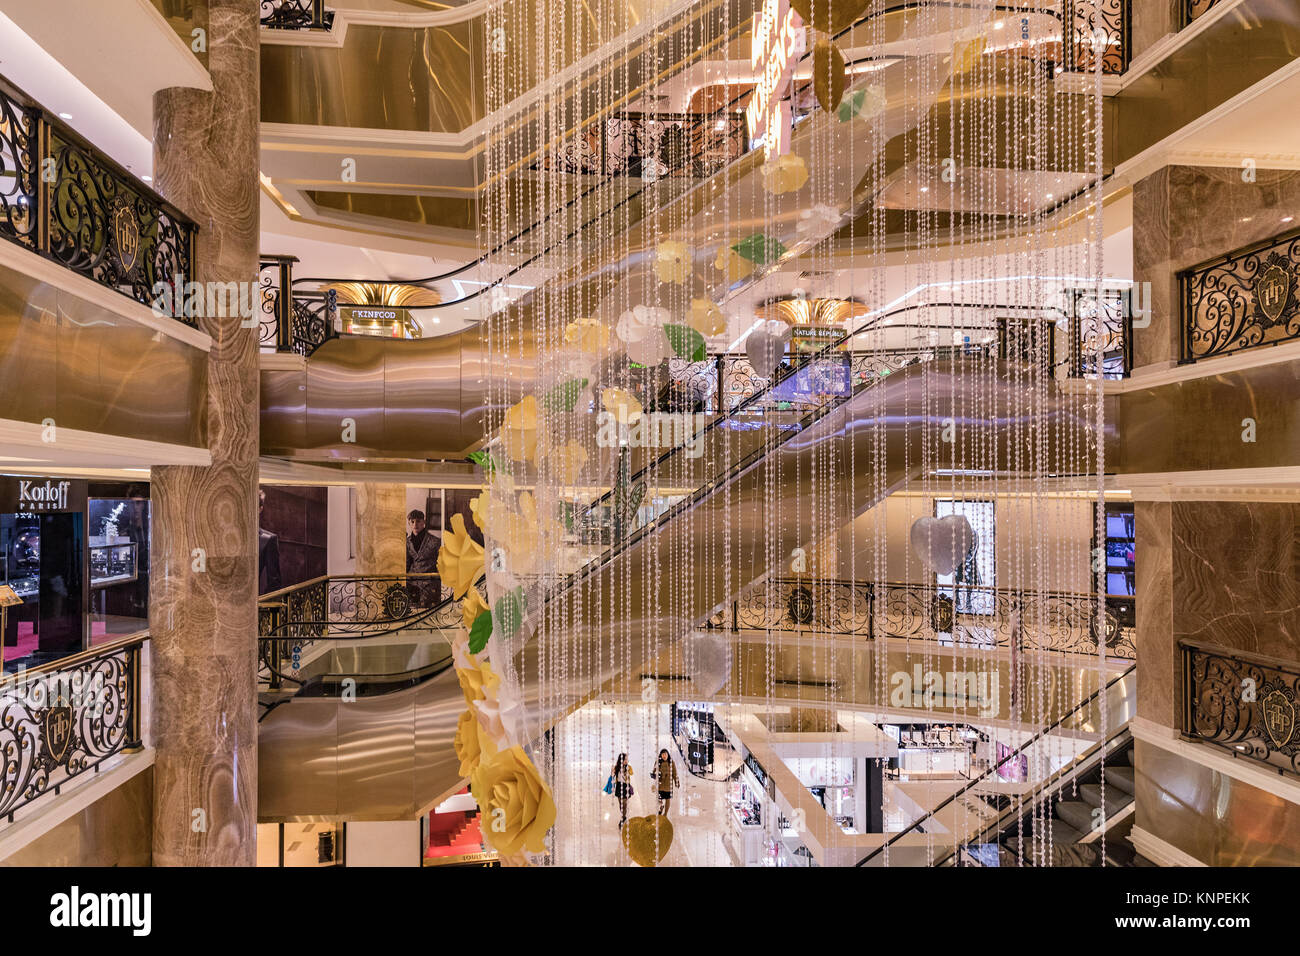 HANOI, VIETNAM - März 08., 2017. Das Innere eines Luxus Shopping mall Trang Tien Plaza, Grand aus der französischen Kolonialzeit Jugendstil. Hanoi, Vietnam Stockfoto